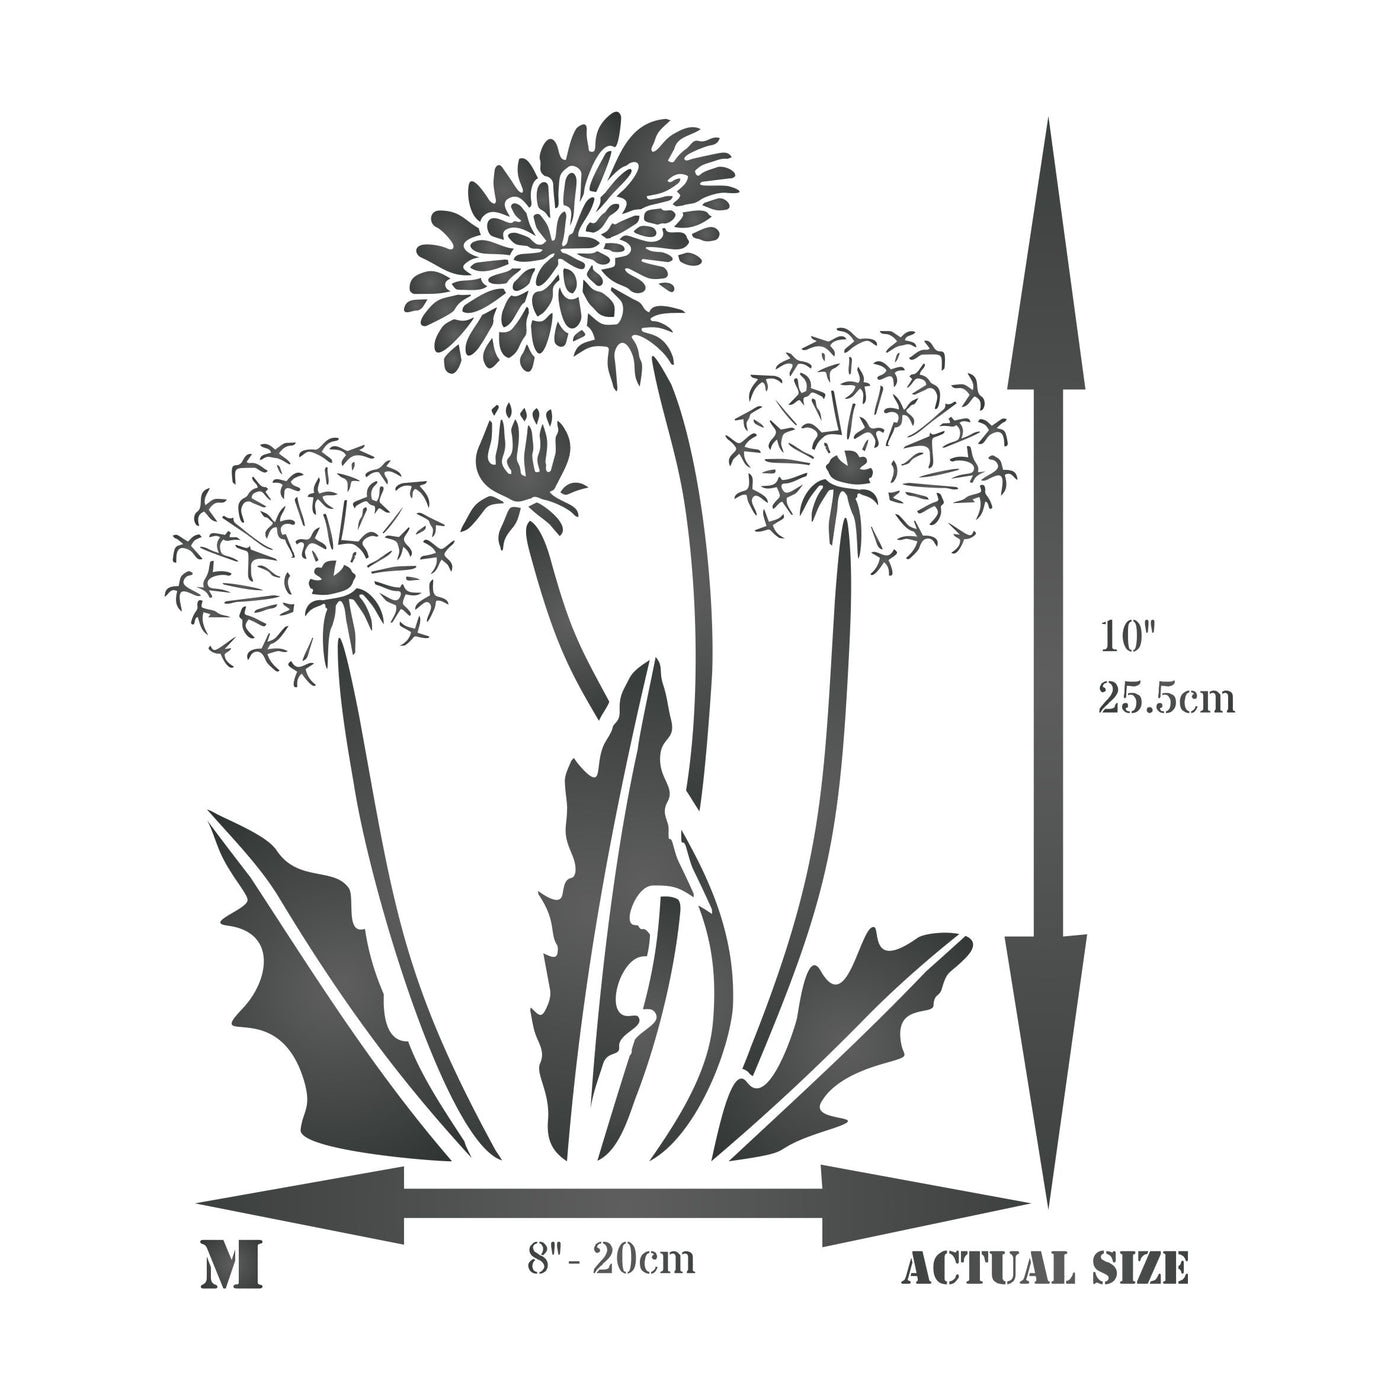 Dandelion Stencil - Dandilion Puff with Flower